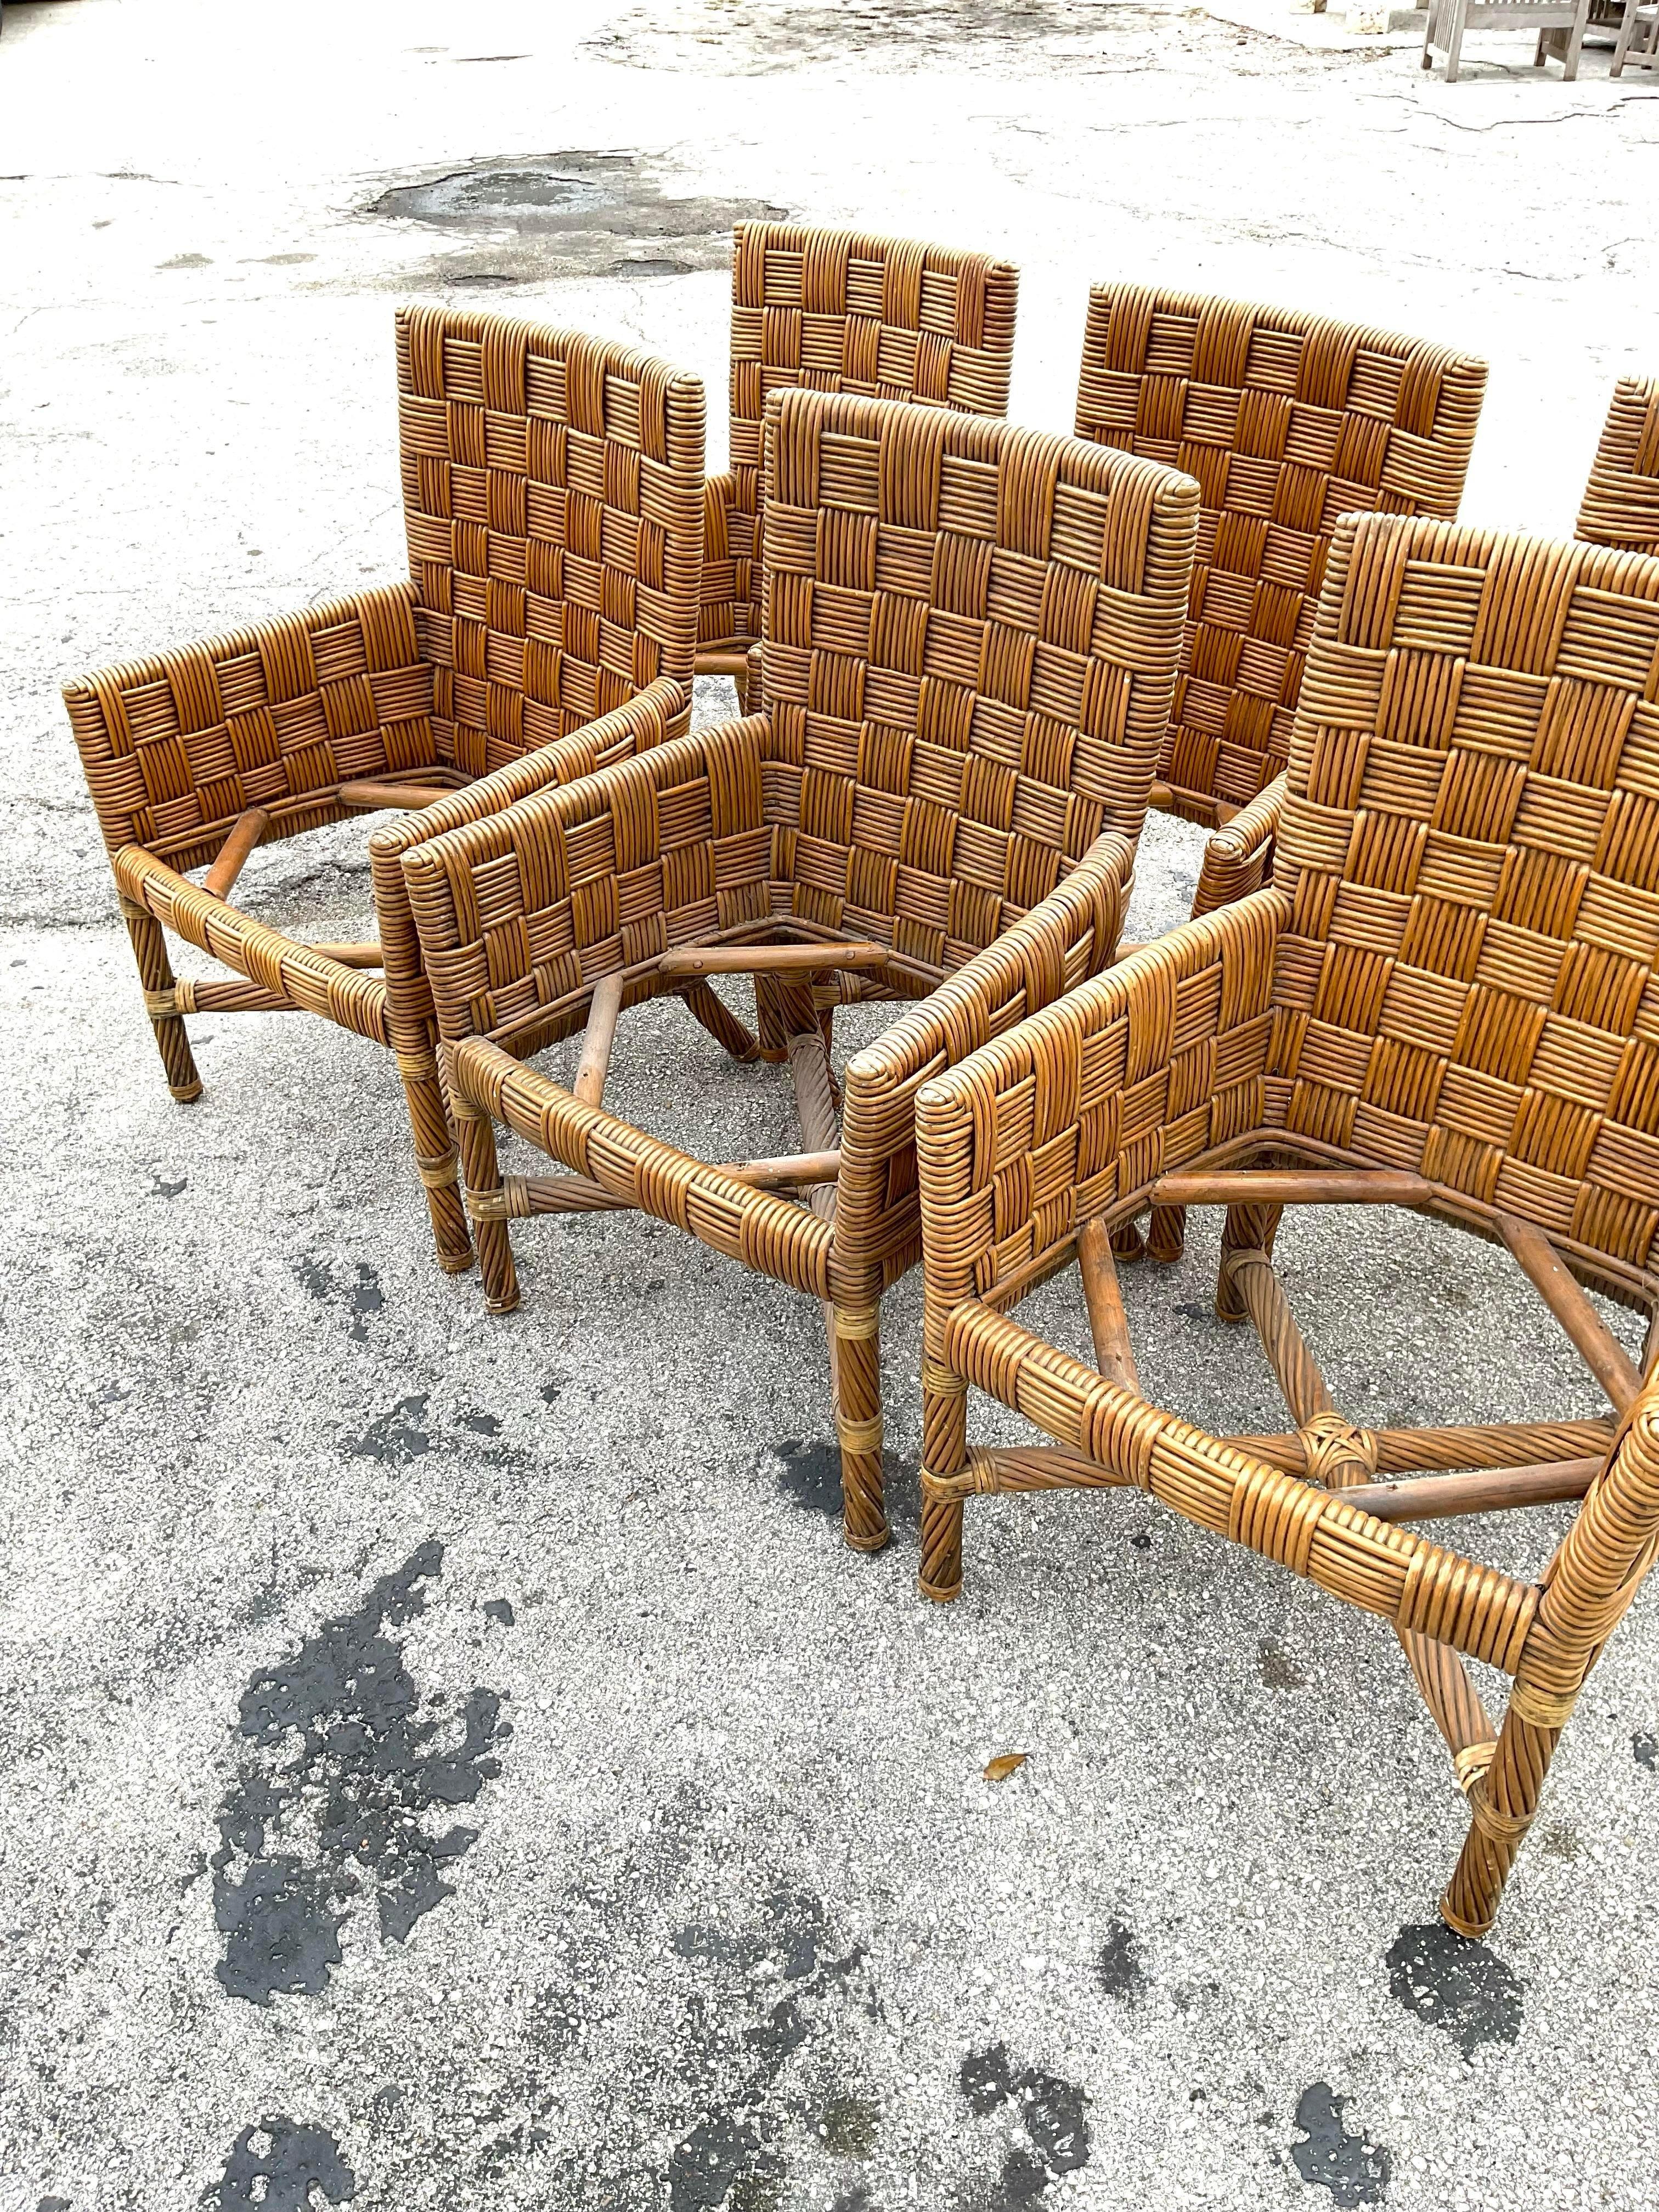 Vintage Satz von 6 Sesseln in einem dicken Korbgeflecht gewebt Rattan Block Muster. Ein fabelhaftes natürliches Element, das jeden Essbereich bereichert. Alle Stühle haben Armlehnen, die sie bequem und elegant machen. Erworben aus einem Nachlass in